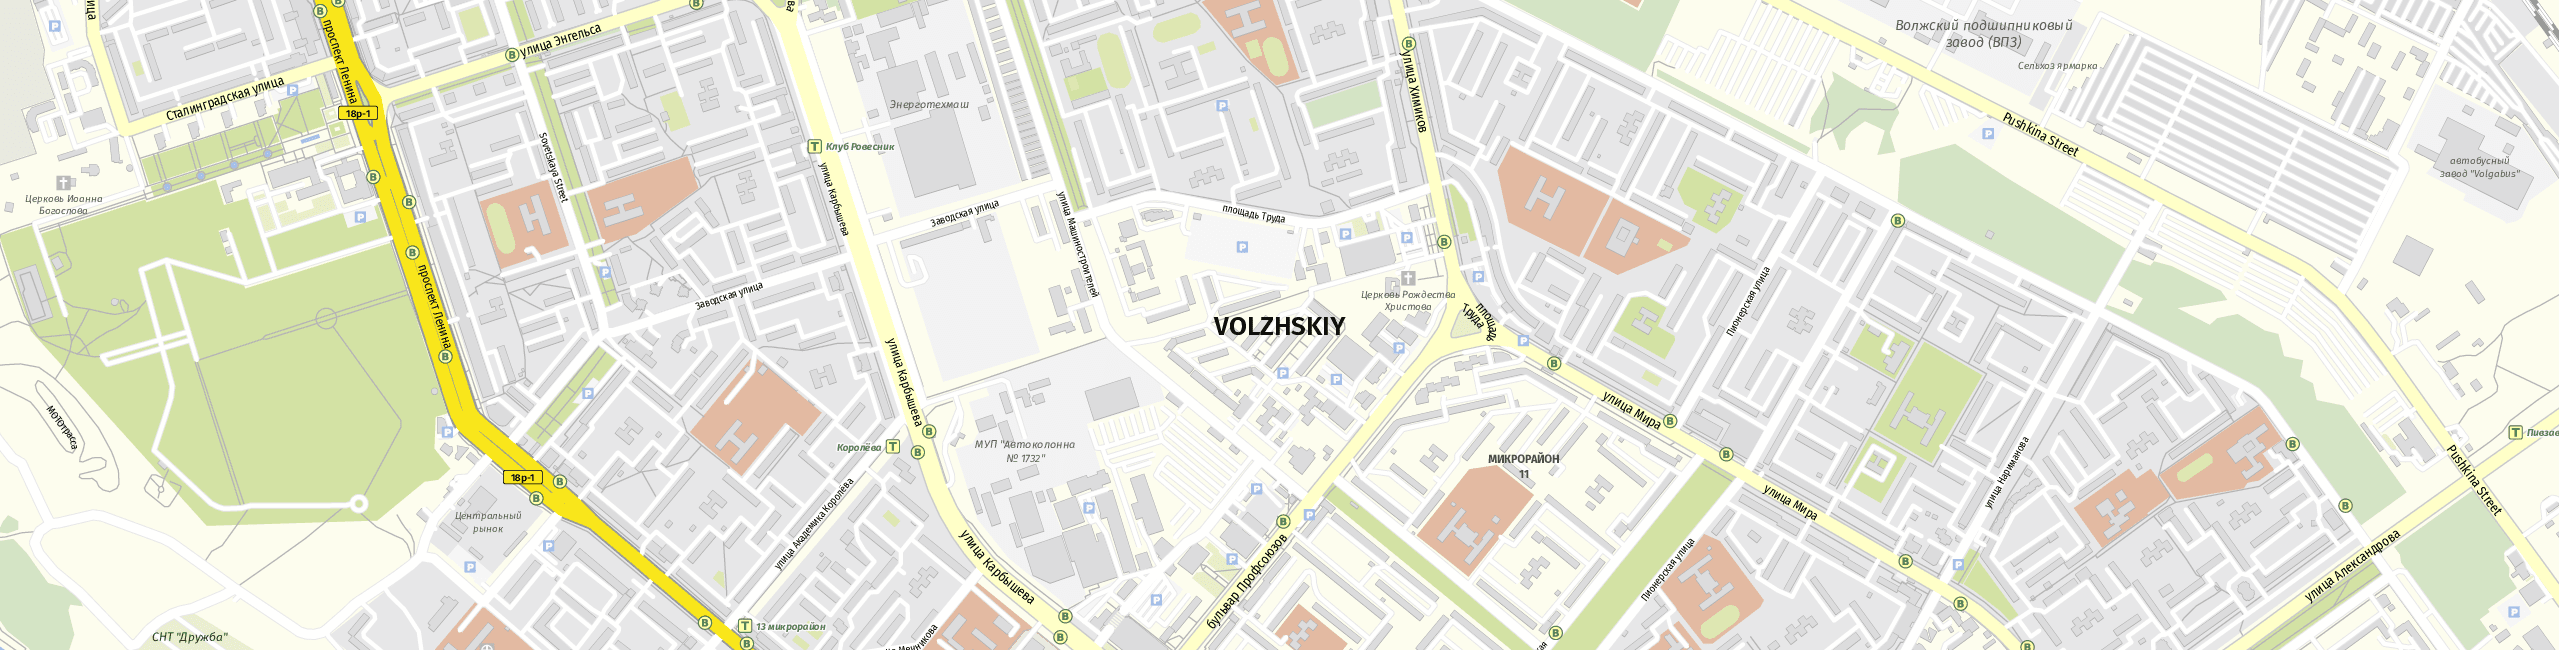 Stadtplan Volzhskiy zum Downloaden.